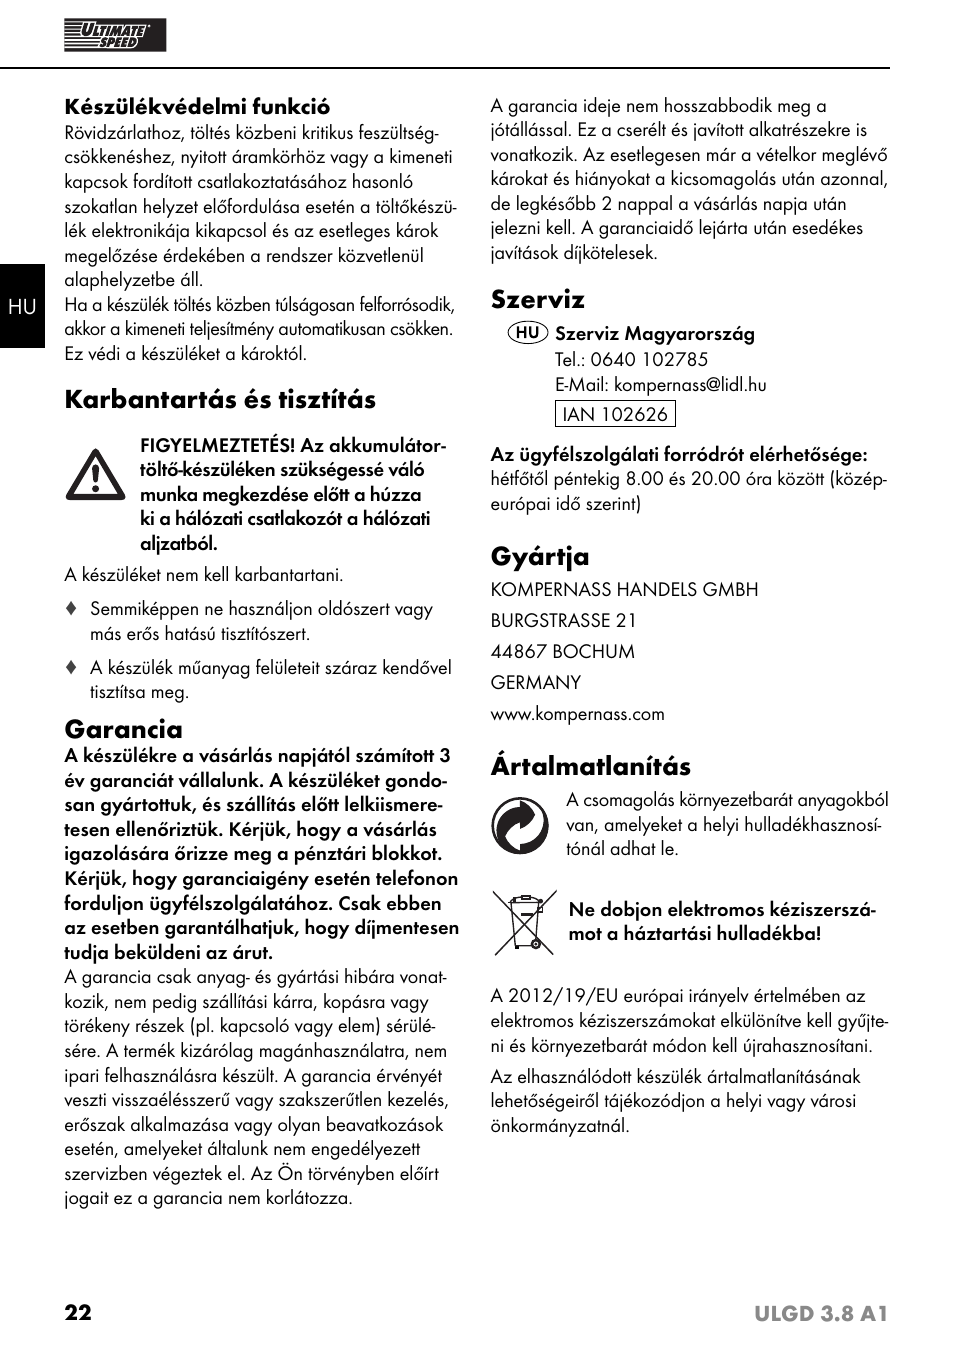 Karbantartás és tisztítás, Garancia, Szerviz | Ultimate Speed ULGD 3.8 A1  User Manual | Page 25 / 51